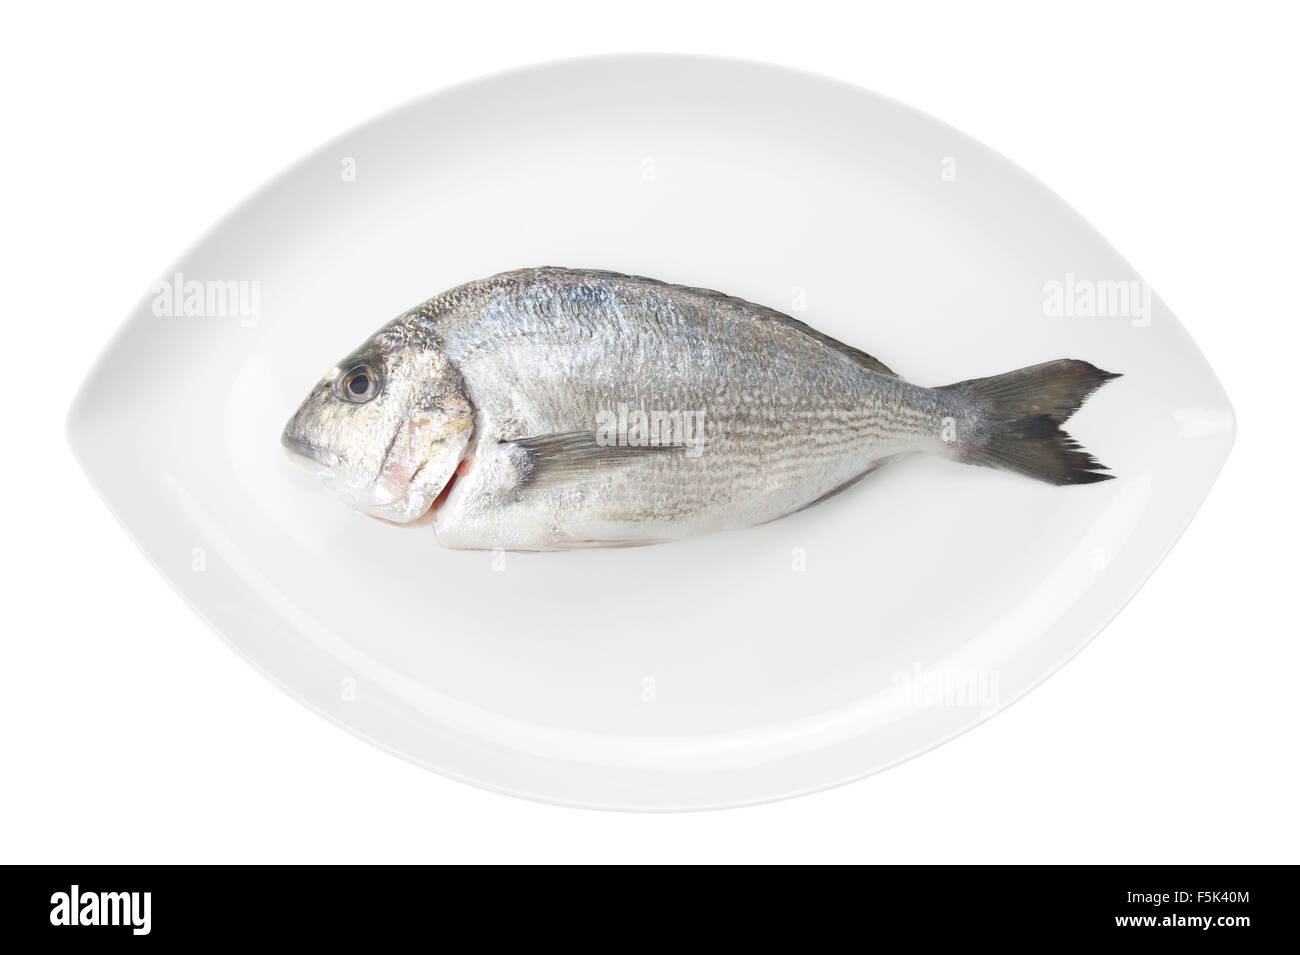 Dorada Meeresfrüchte auf einen weißen ovalen Teller isoliert auf weißem Hintergrund. Auch bekannt als Brassen Seefisch. Rohkost. Stockfoto